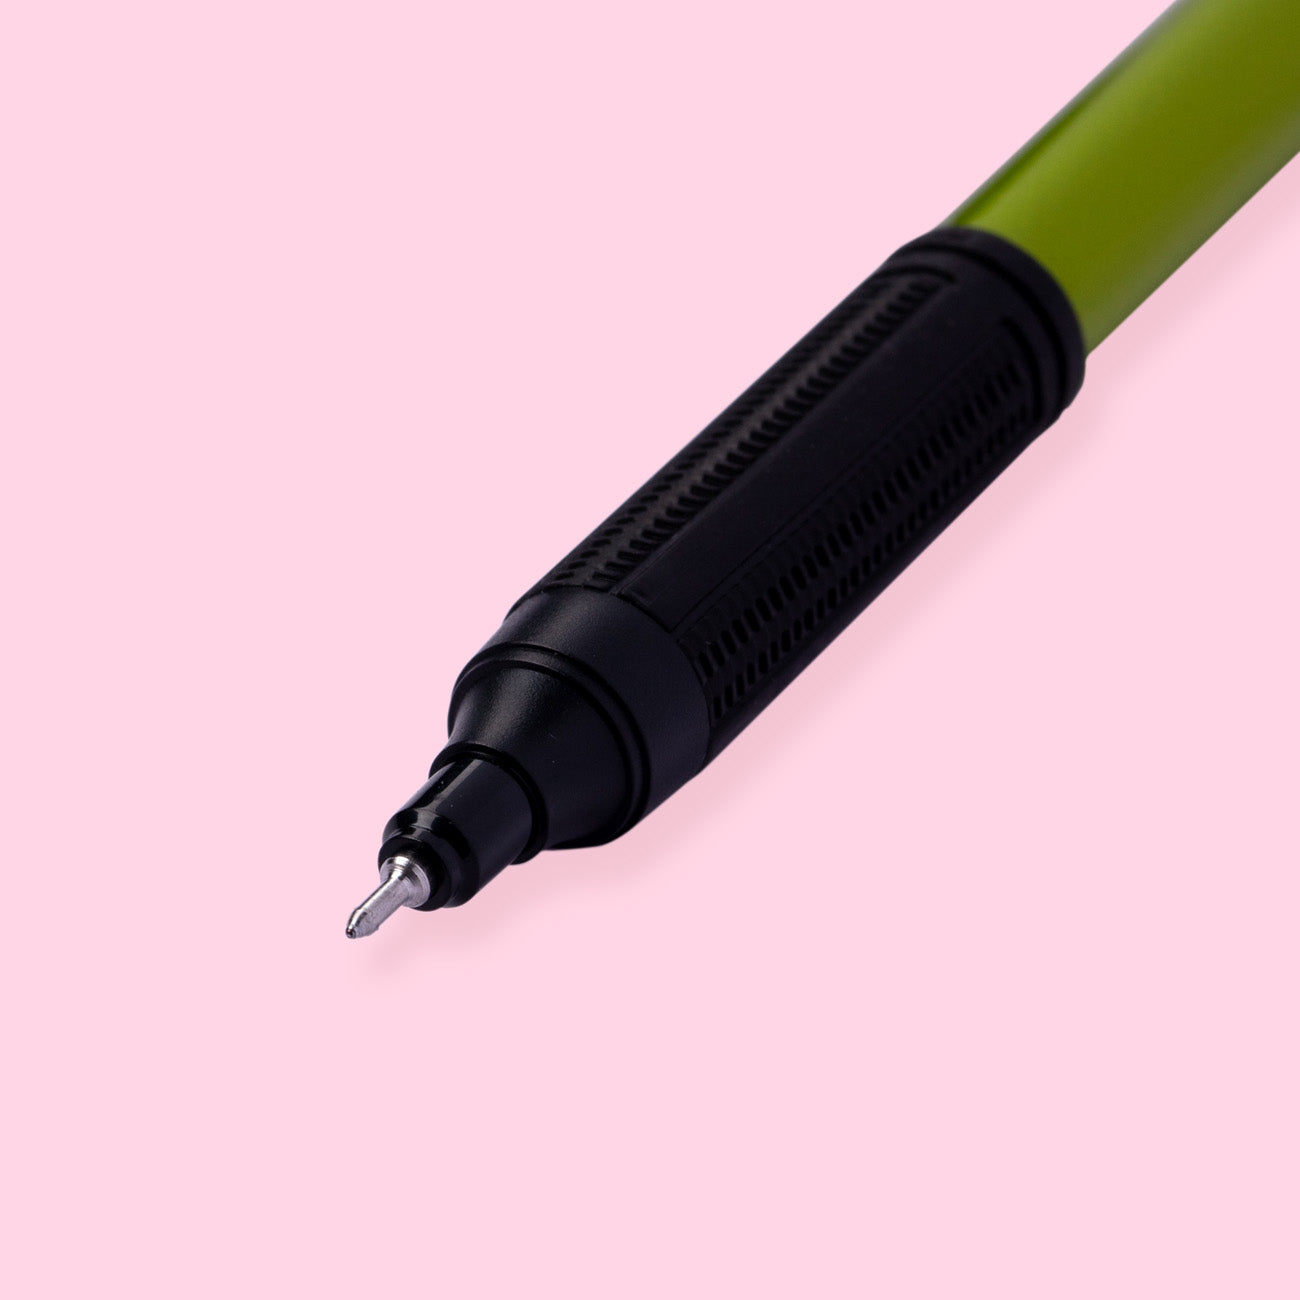 Tombow MONO Graph Lite Oil-Based Ballpoint Pen - Lime - Black Ink - 0.5 mm